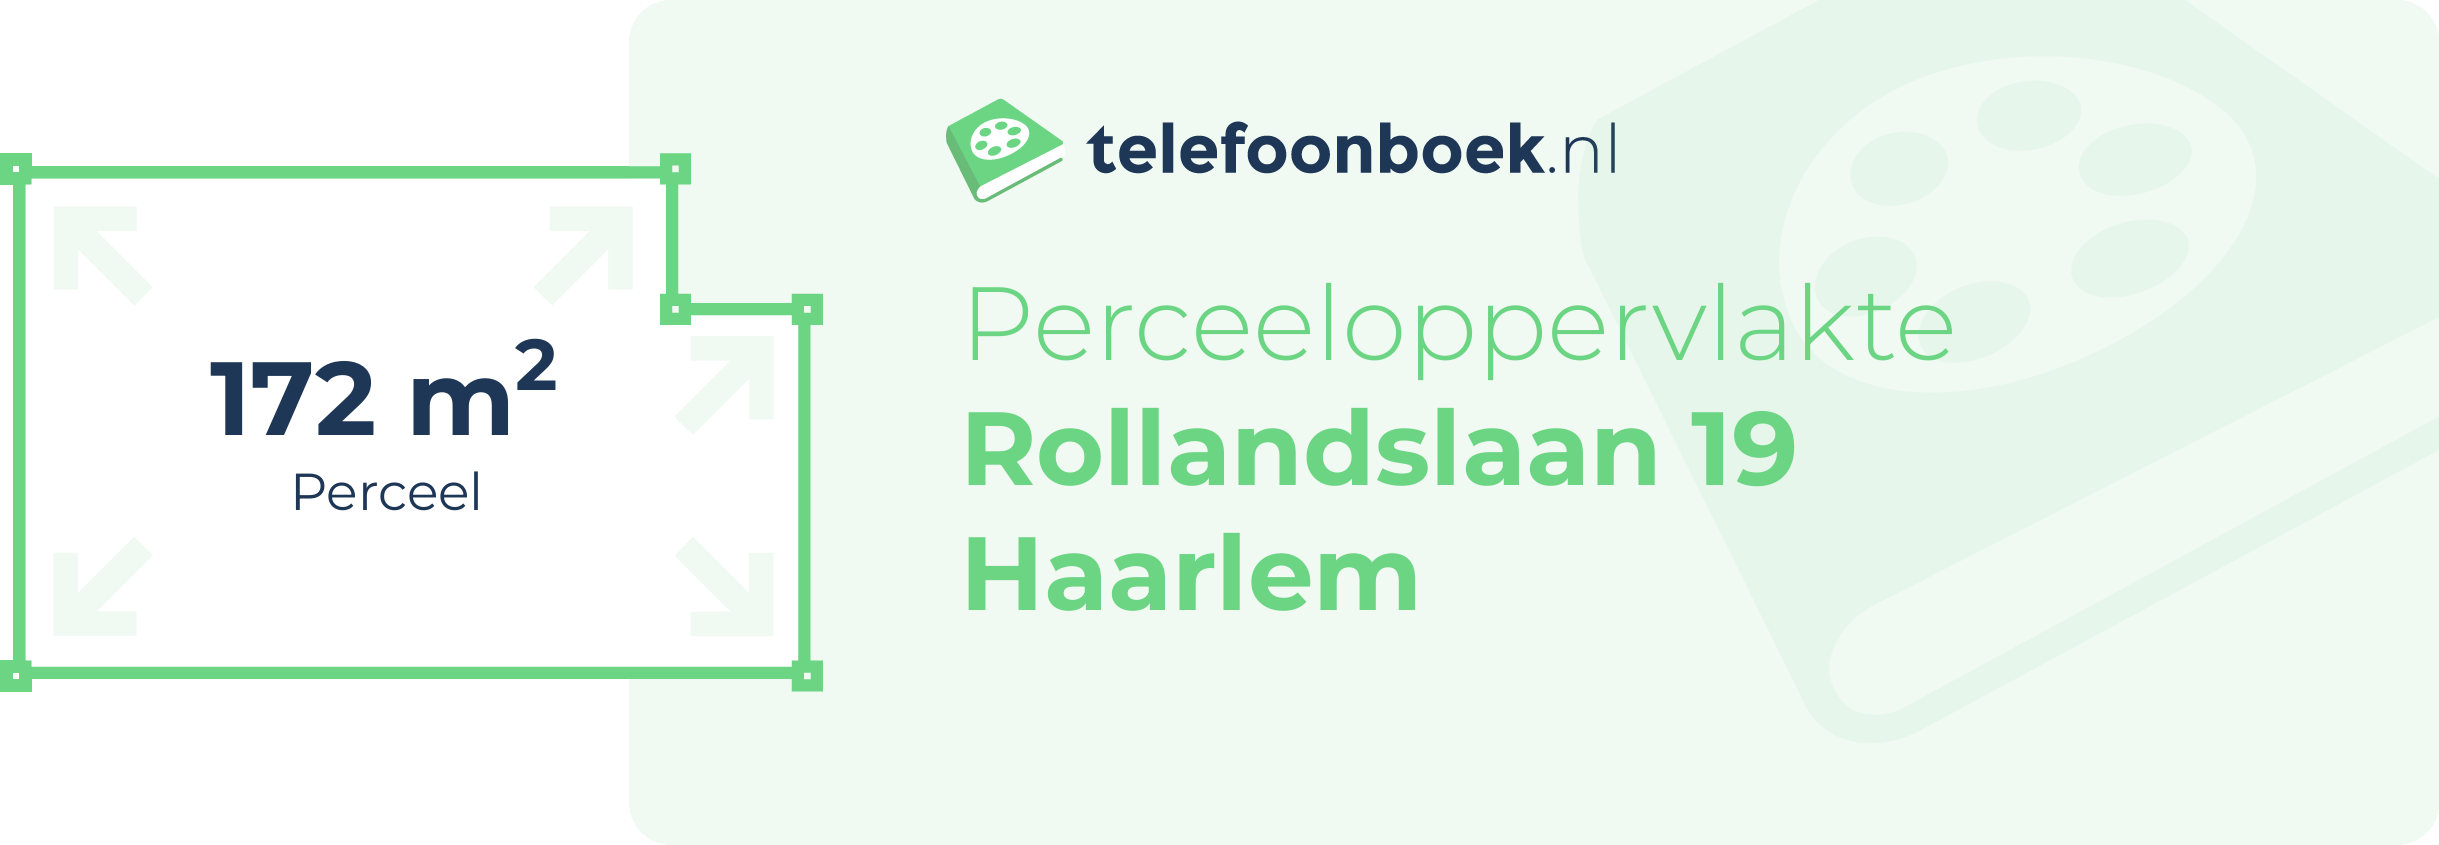 Perceeloppervlakte Rollandslaan 19 Haarlem